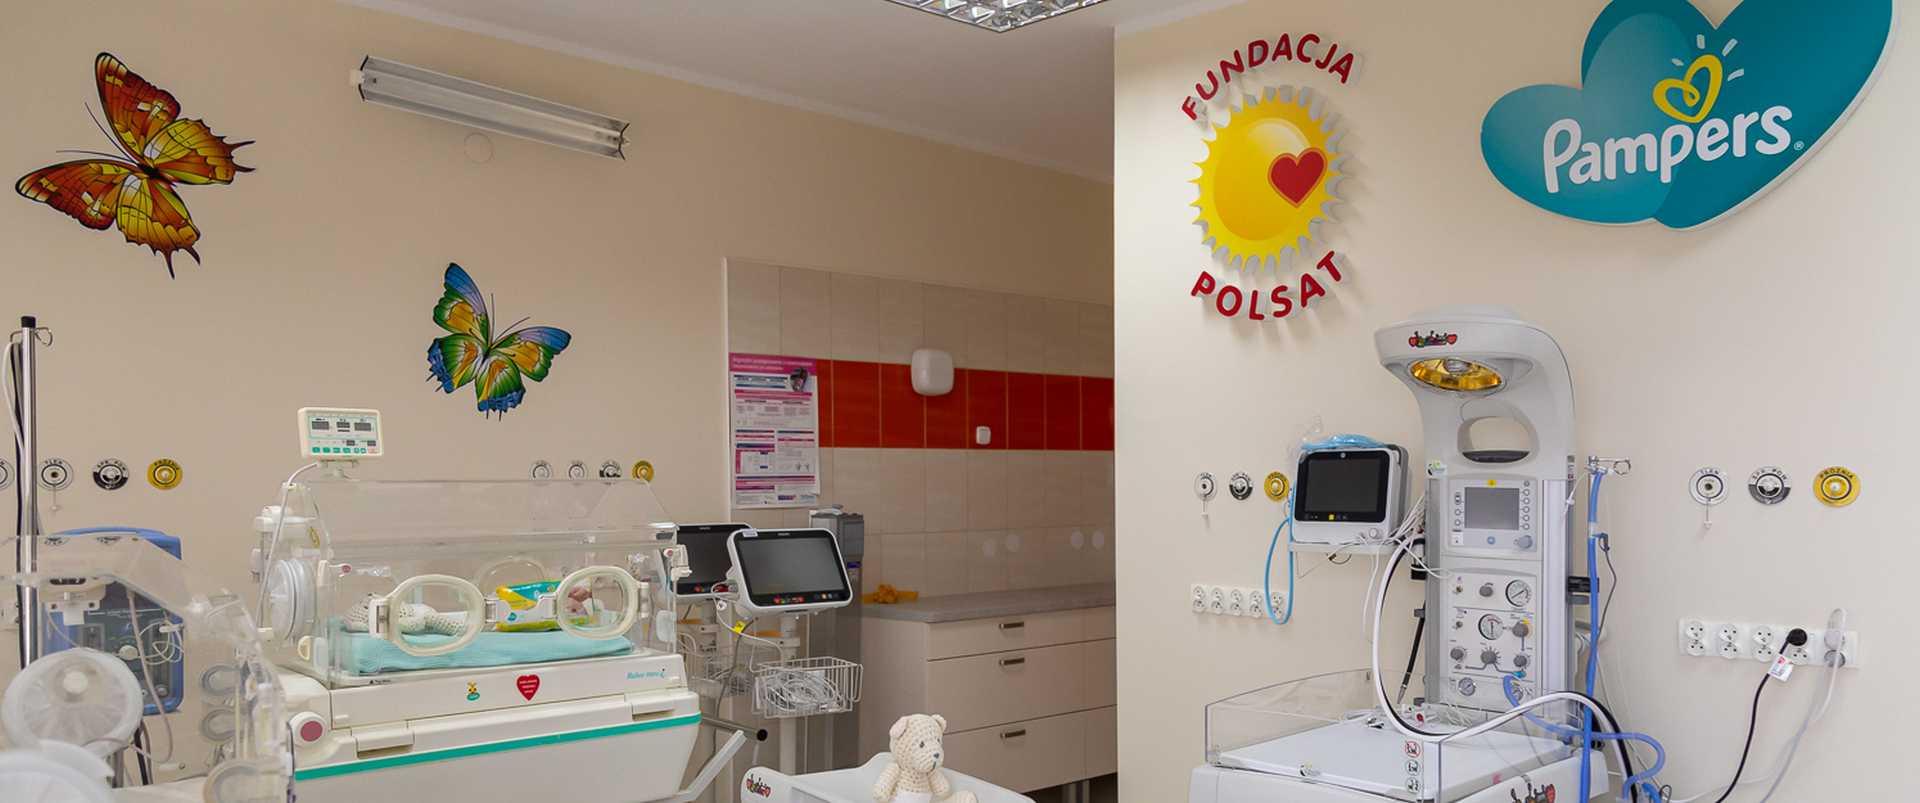 Przyjaźniejszy oddział położniczo-neonatologiczny w Lubartowie - Pampers współfinansował modernizację